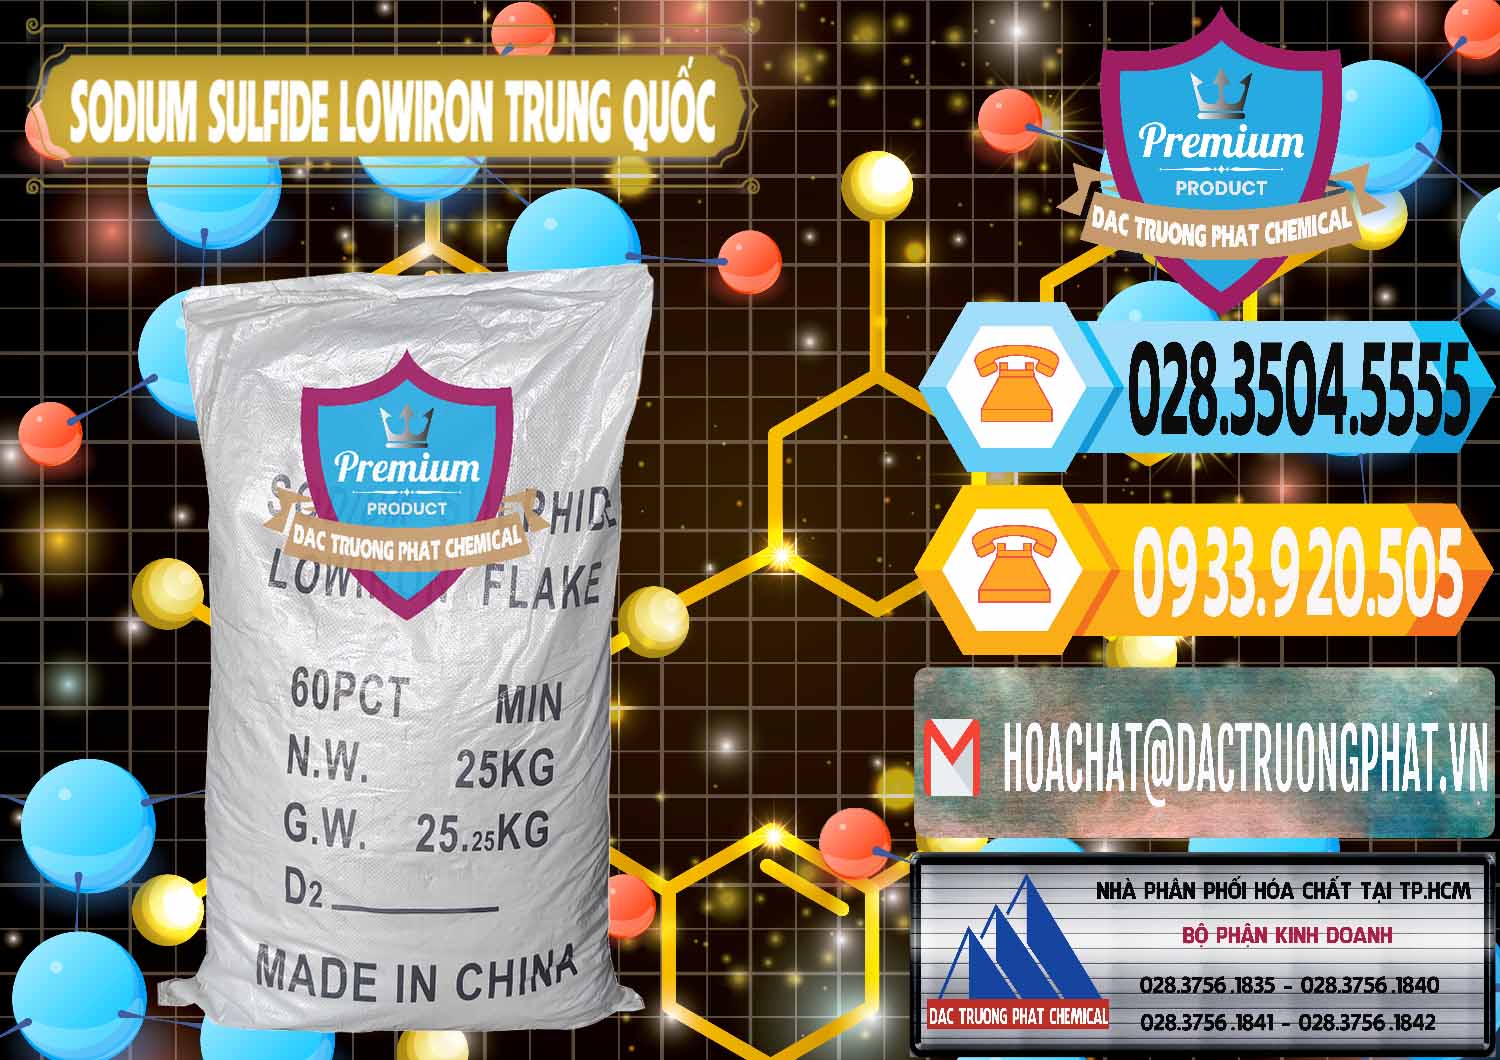 Chuyên bán và cung cấp Sodium Sulfide NA2S – Đá Thối Lowiron Trung Quốc China - 0227 - Nơi chuyên bán - phân phối hóa chất tại TP.HCM - hoachattayrua.net